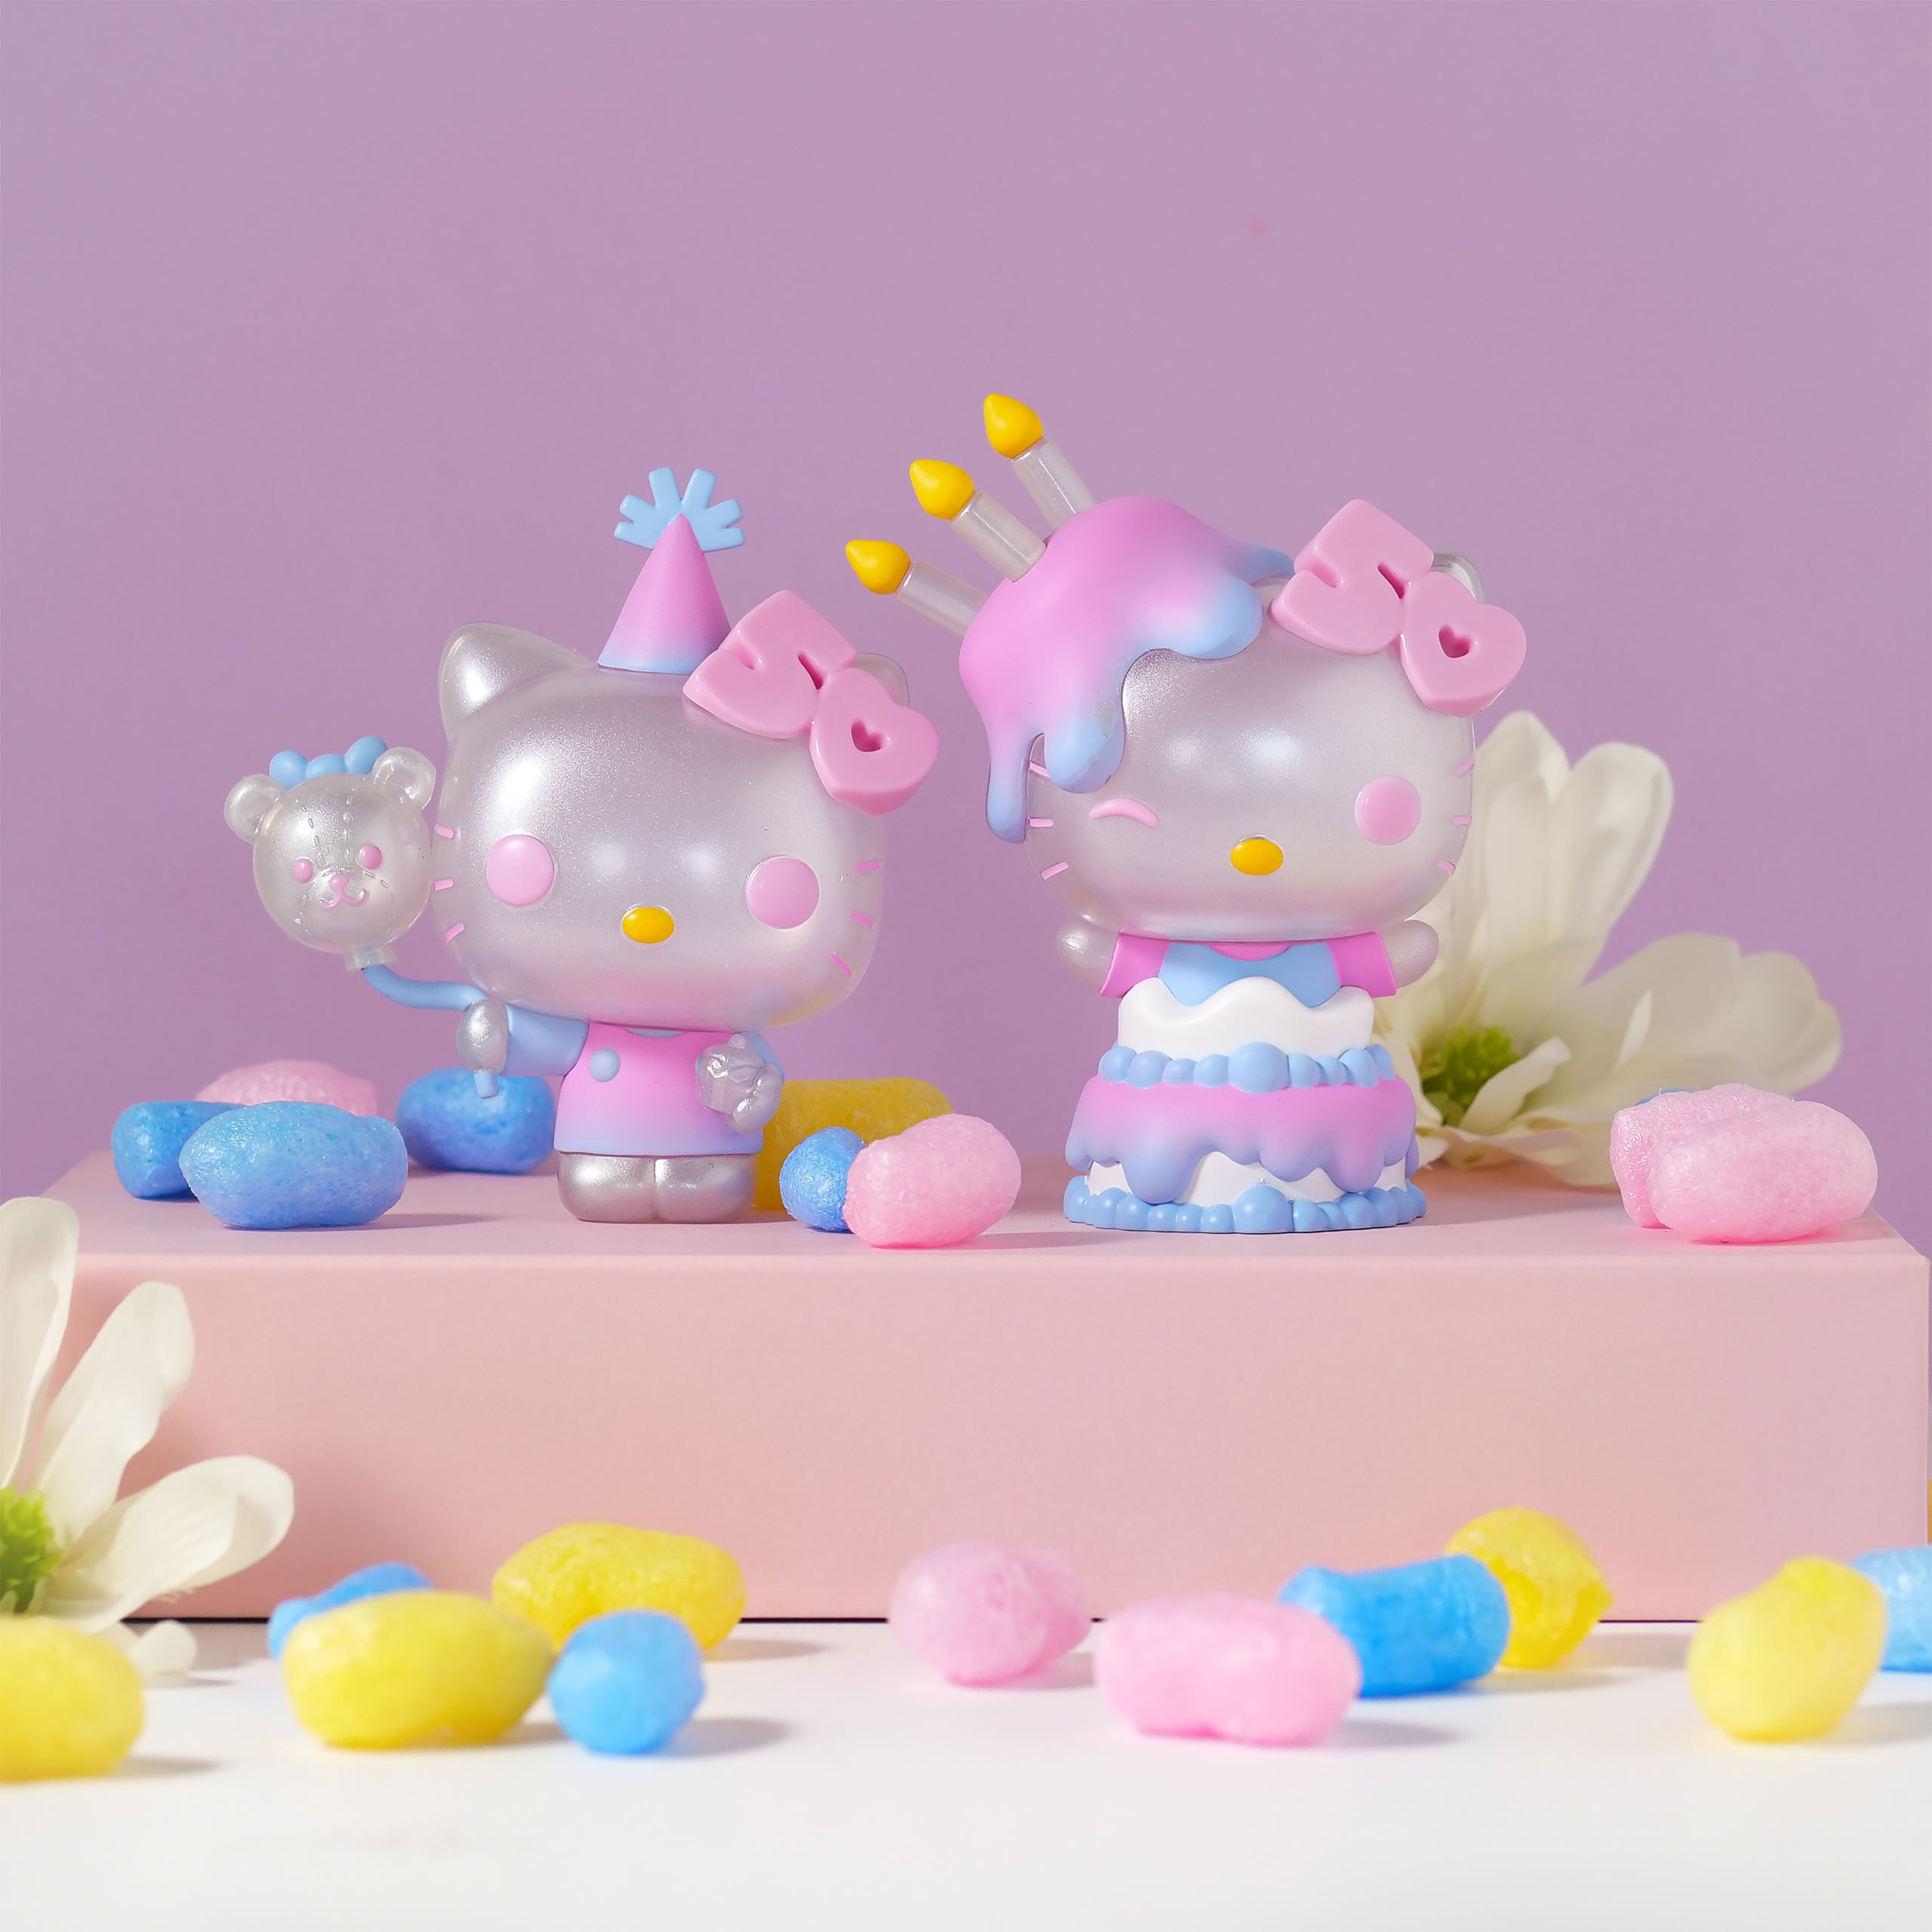 Hello Kitty - Funko Pop Figure with Balloon